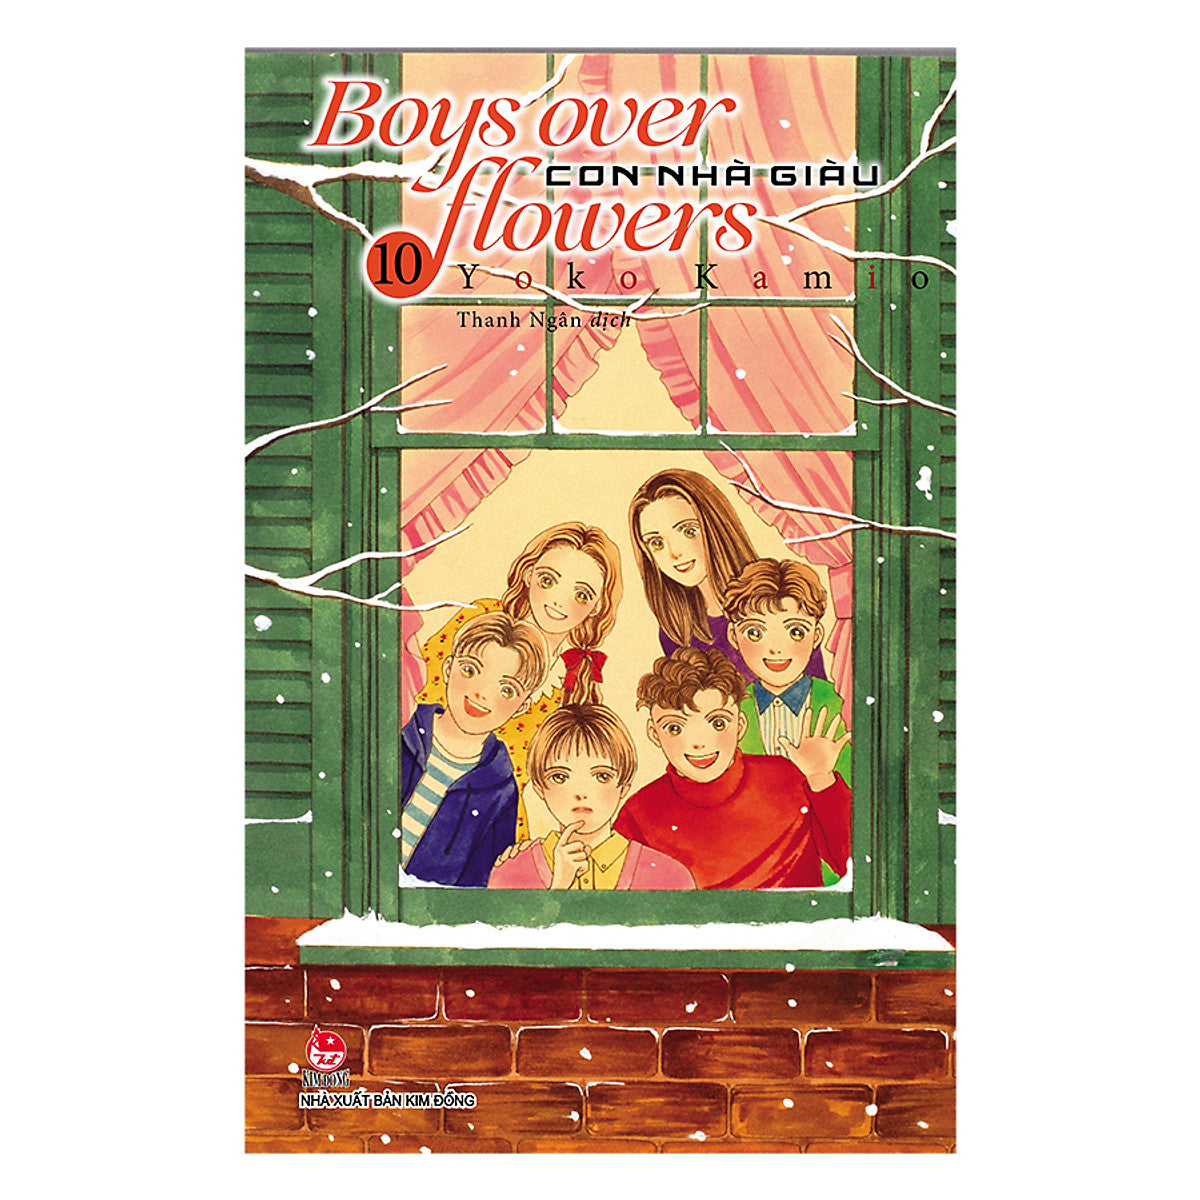 Boys Over Flowers - Con Nhà Giàu Full (Tập 1-37) Truyện mới